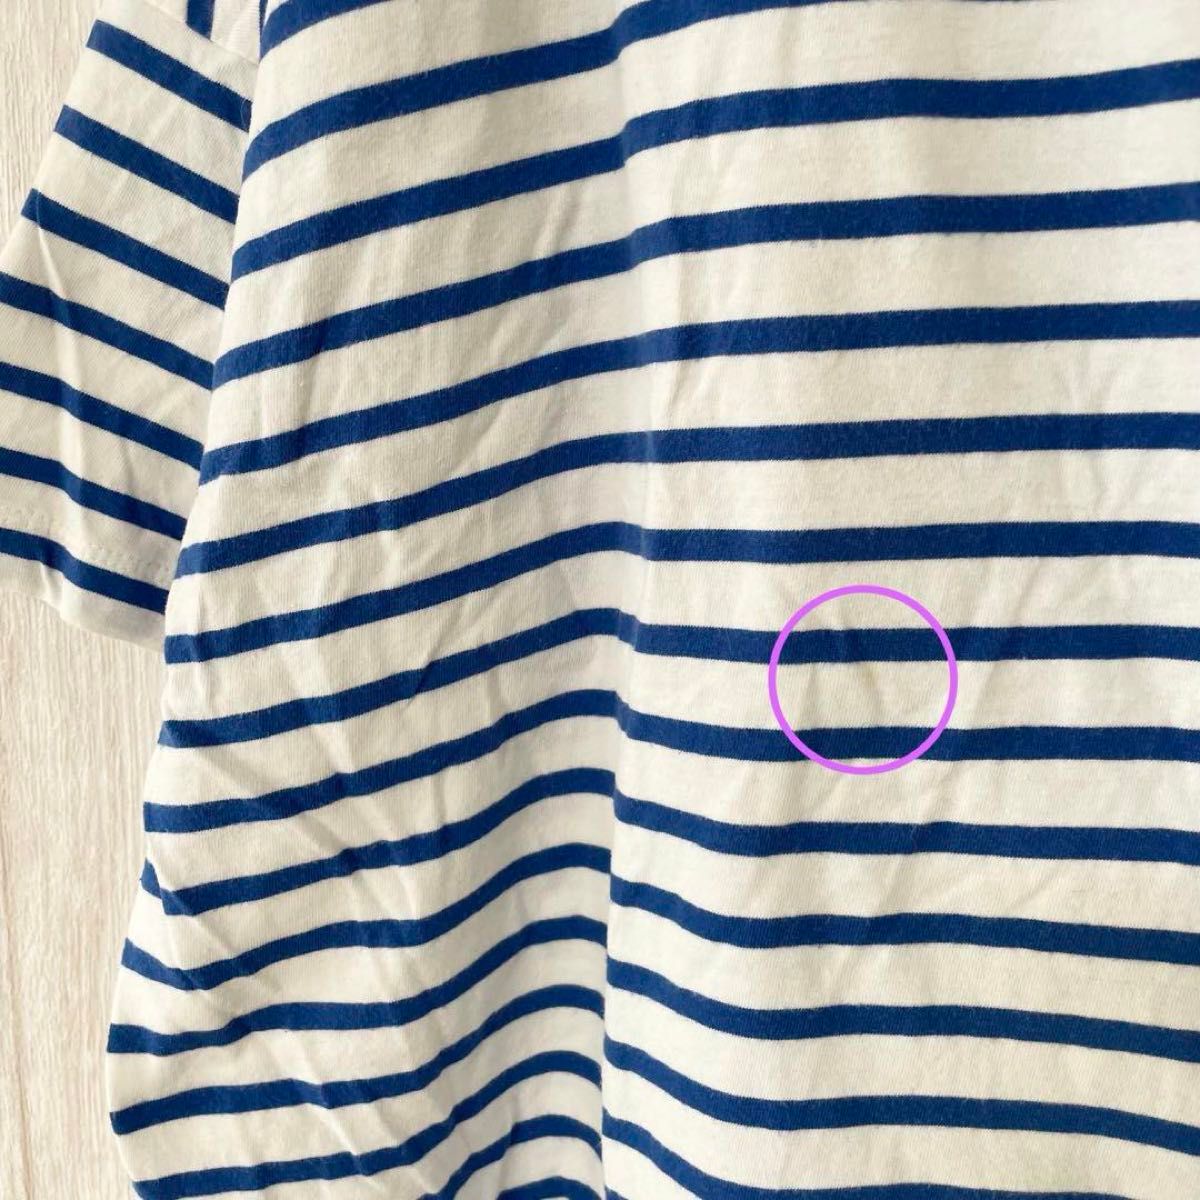 【ニコアンド】ドロップショルダー ボーダー カットソー/クルーネック/体型カバー 半袖 Tシャツ ホワイト ブルー オーバーサイズ